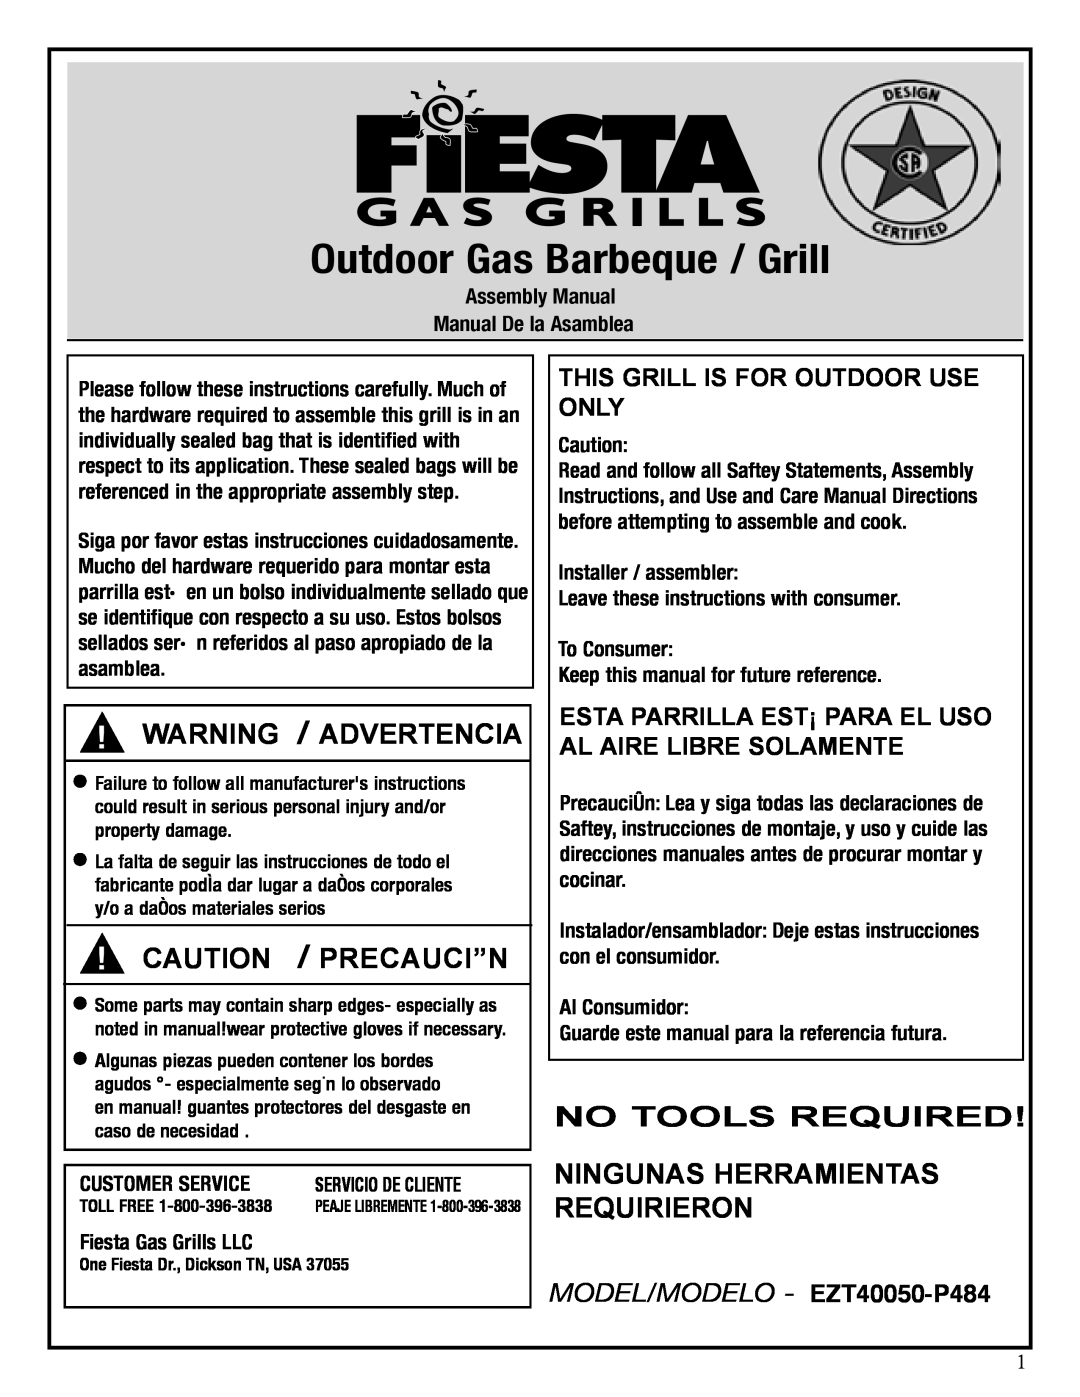 Fiesta EZT40050-P484 manual Warning / Advertencia, Caution / Precauci”N, Assembly Manual Manual De la Asamblea 